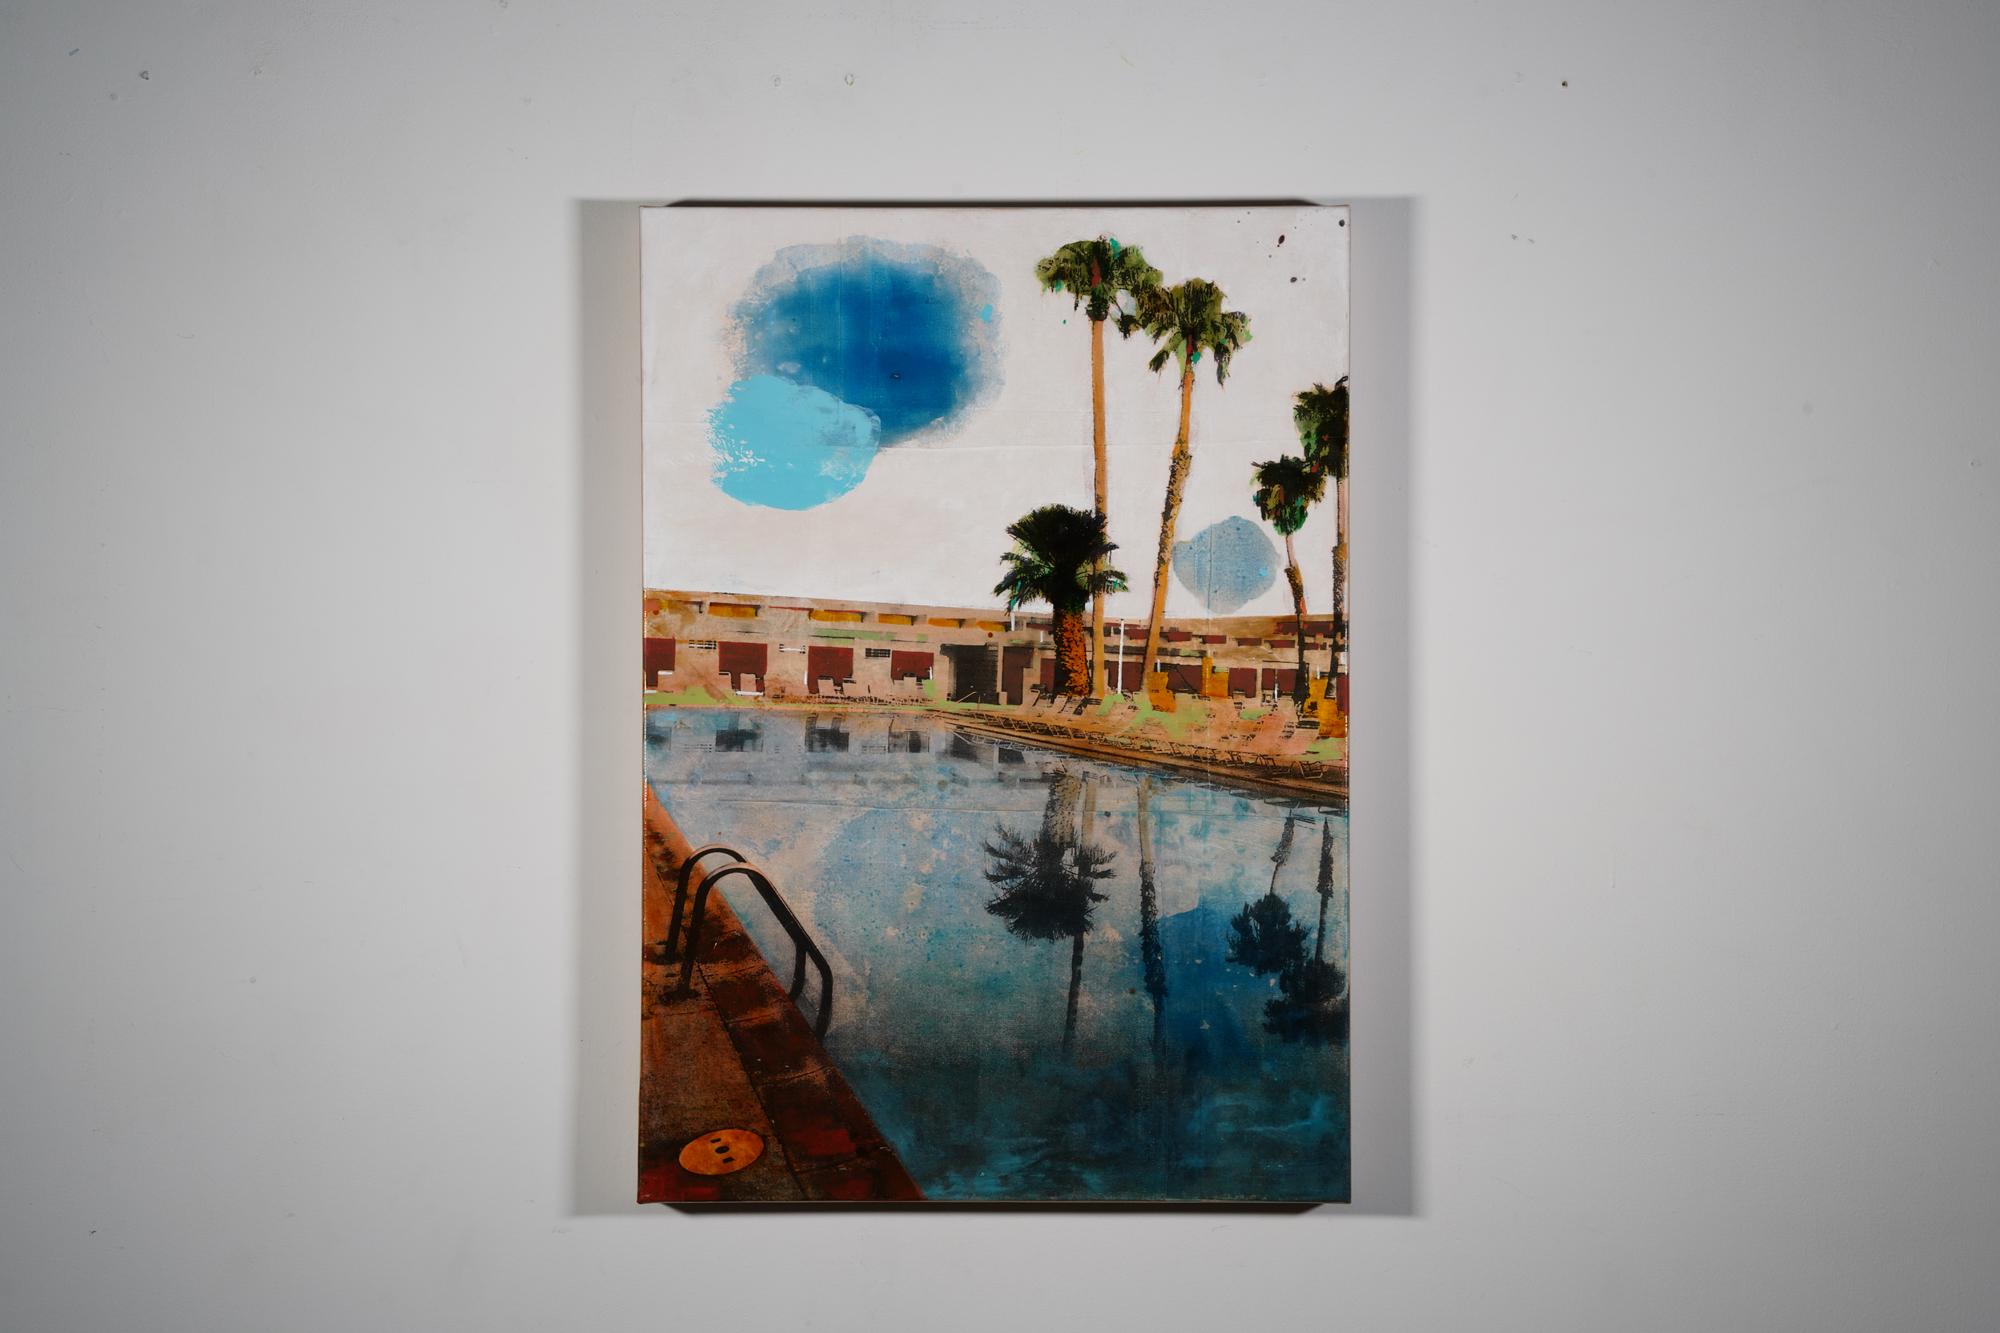 Miroir de Palm - Painting de Ayline Olukman